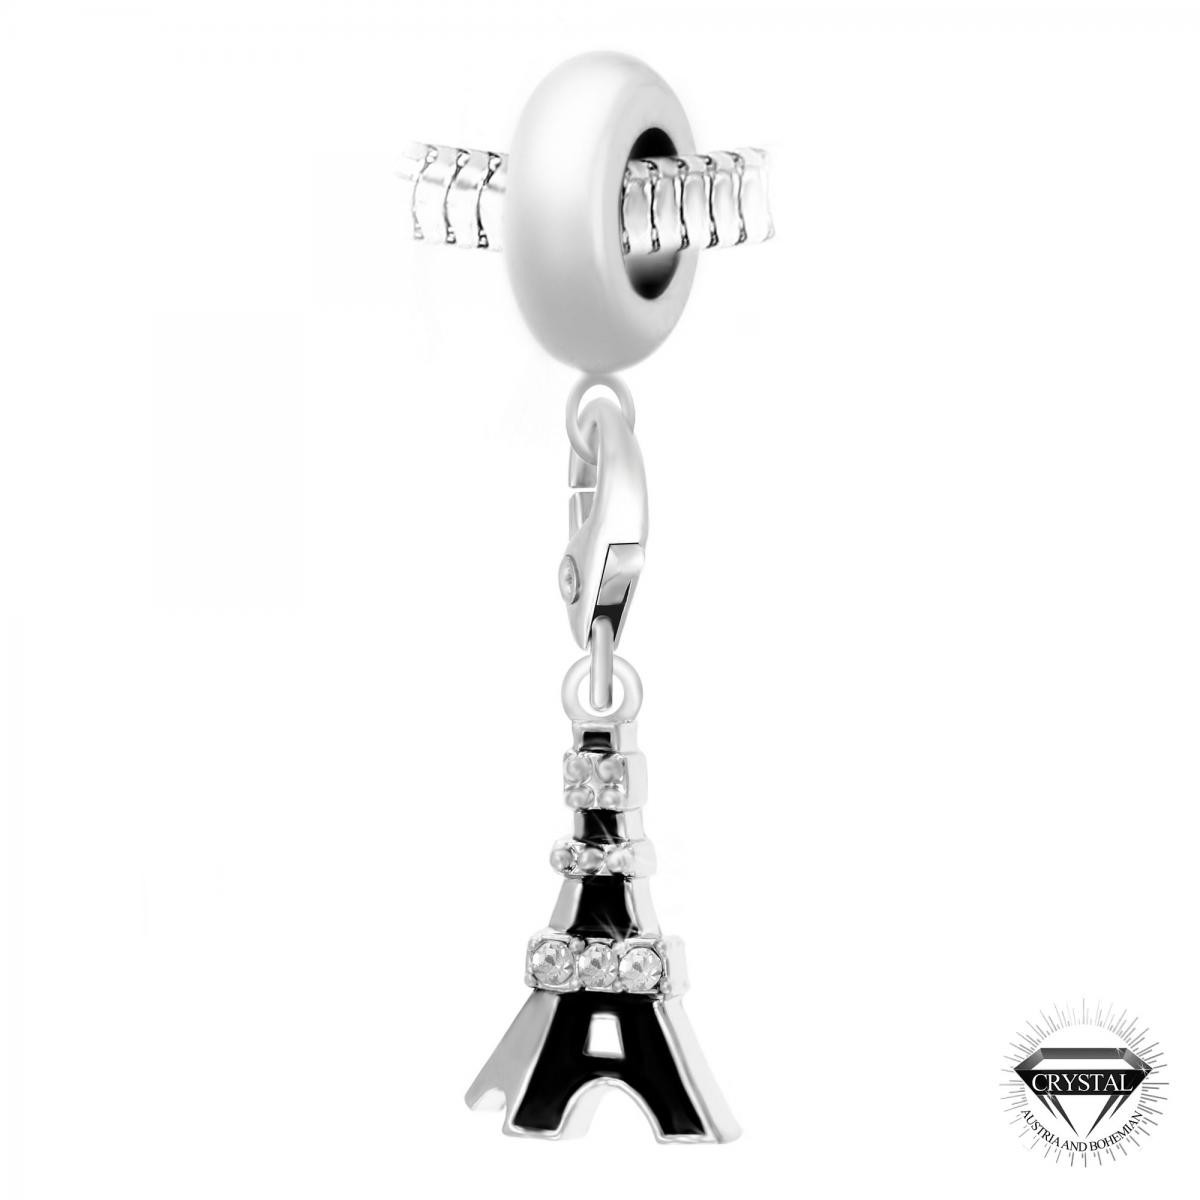 Charm perle Tour Eiffel noire orné de cristaux Swarovski par SC Crystal Paris®